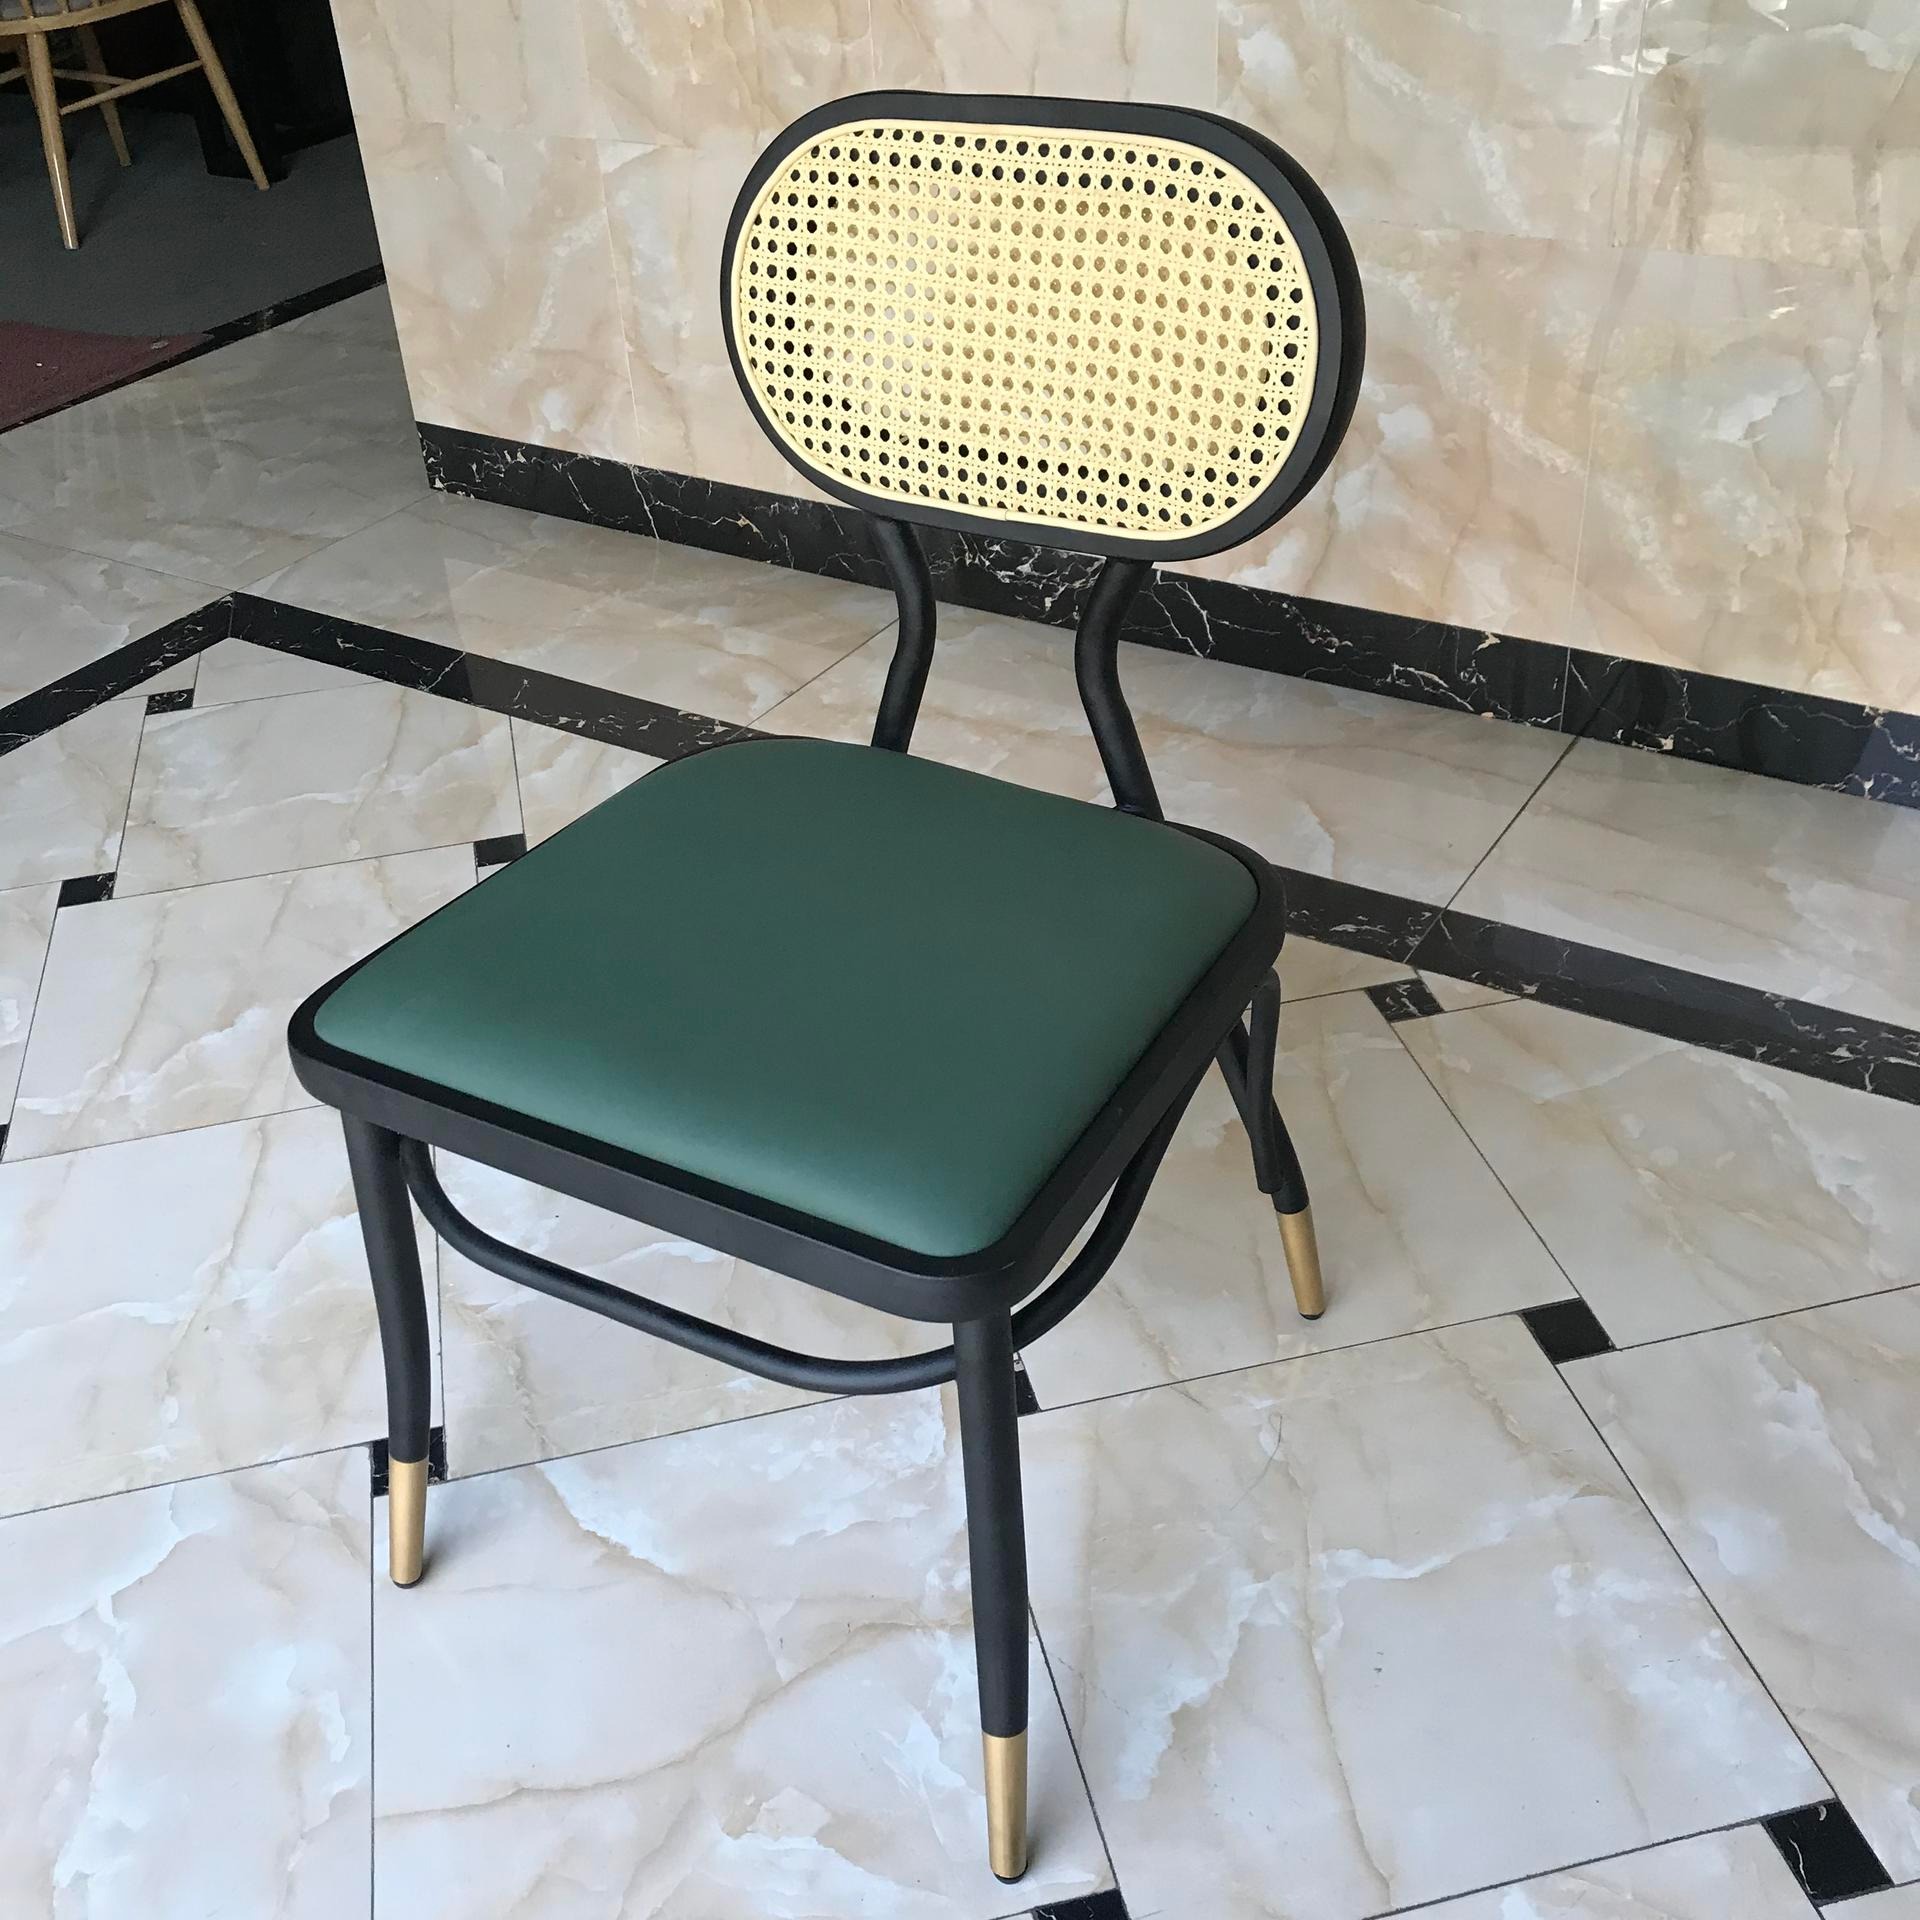 广州2020新款椅子编藤背椅 实木 钢架 网红椅 家用椅子 塑料靠背椅 北欧塑料椅 公共餐椅 PP塑胶餐椅 快餐桌塑料椅图片